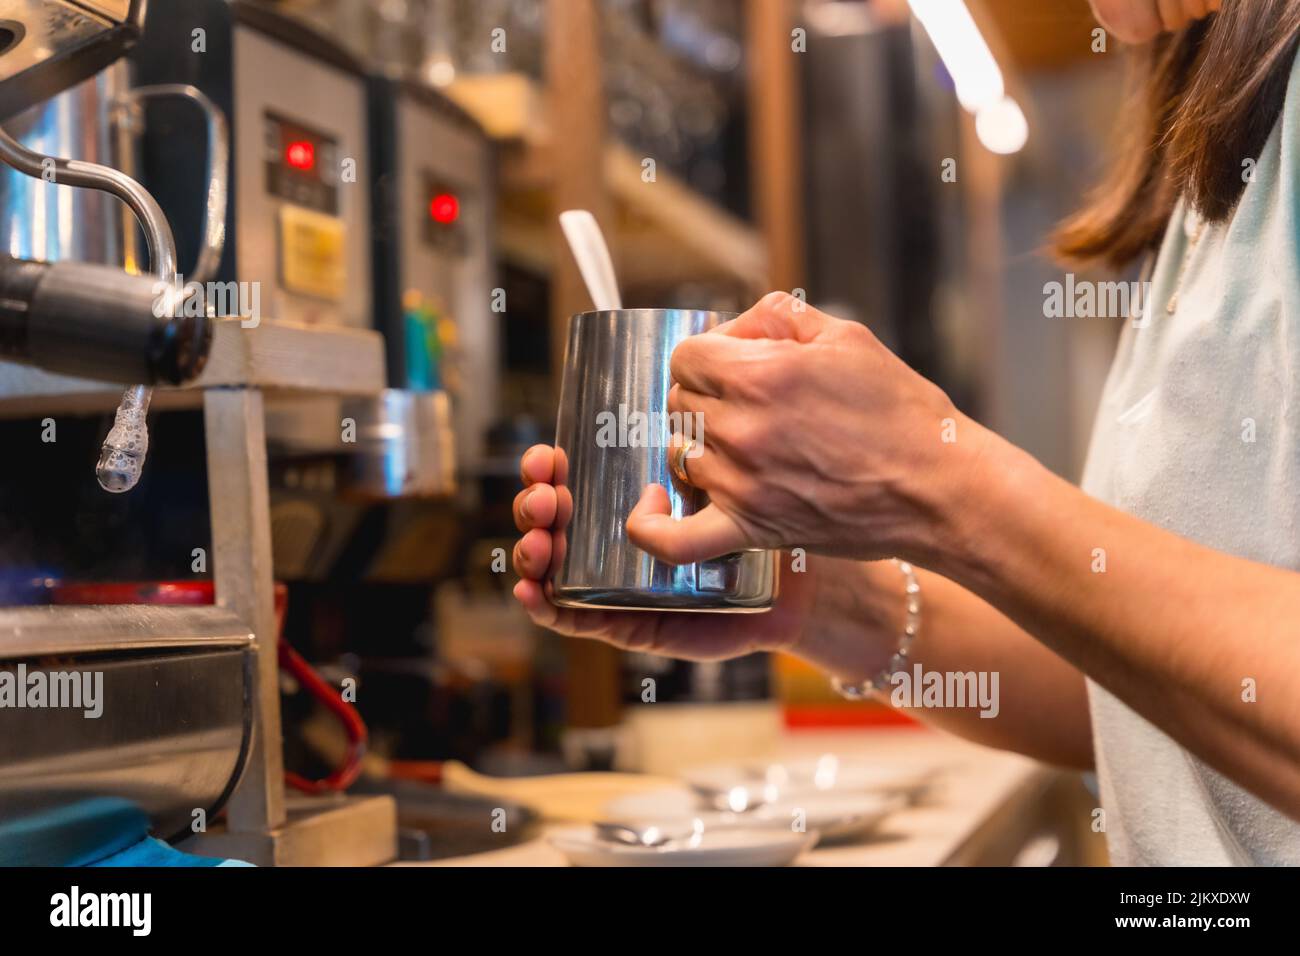 Une serveuse méconnaissable à la cafétéria femme prépare du café dans une machine à café, les restrictions dues au covid sont levées et l'utilisation obligatoire o Banque D'Images